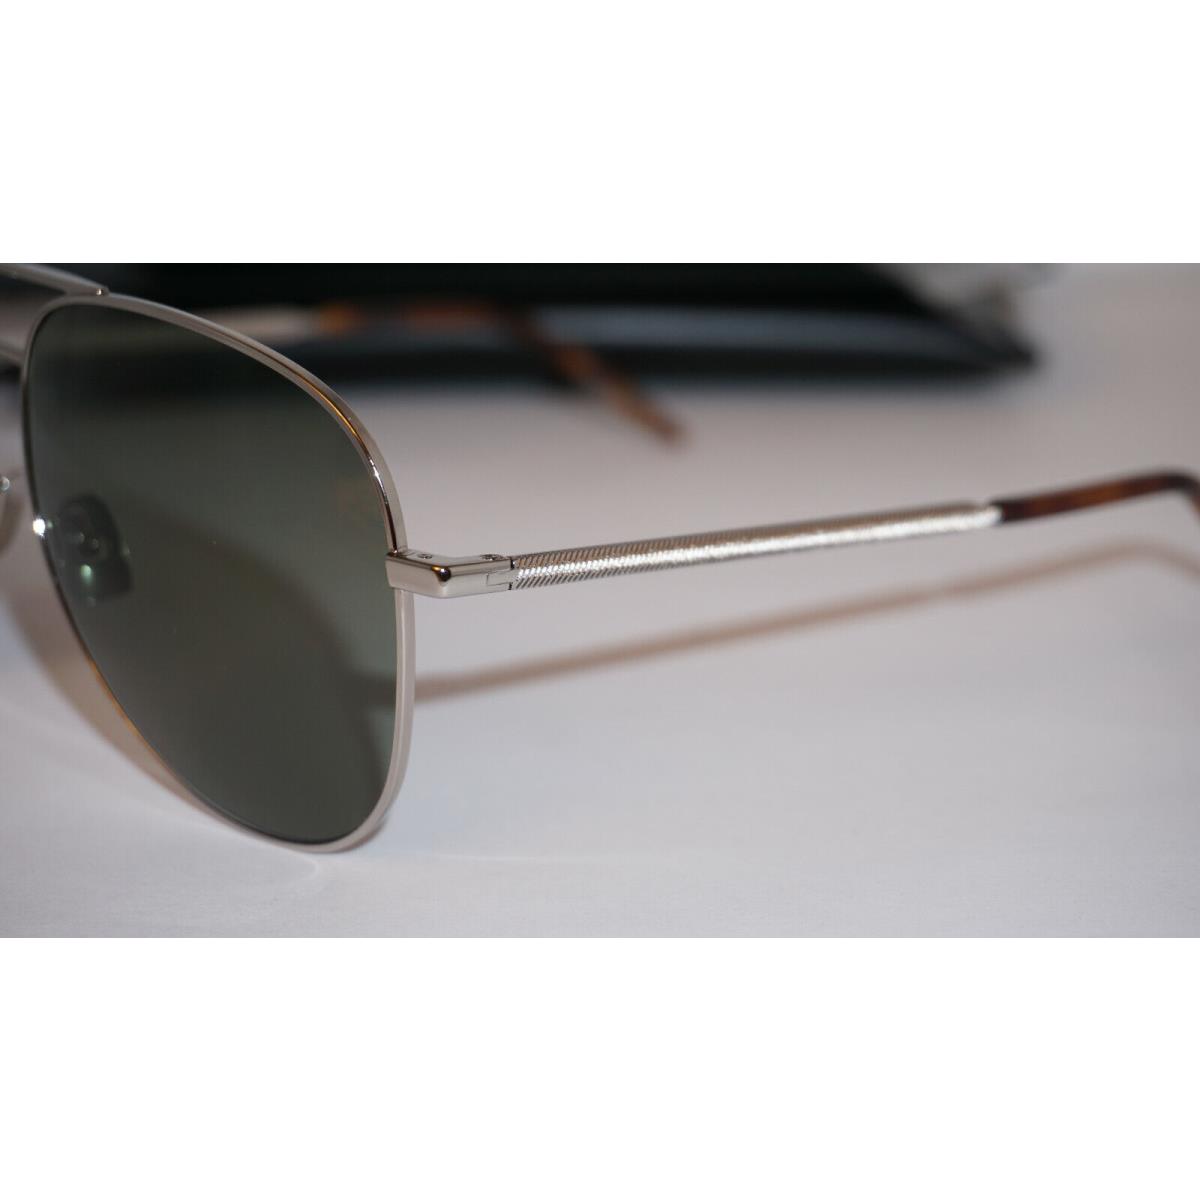 Yves Saint Laurent sunglasses  - Frame: Silver, Lens: Green 3